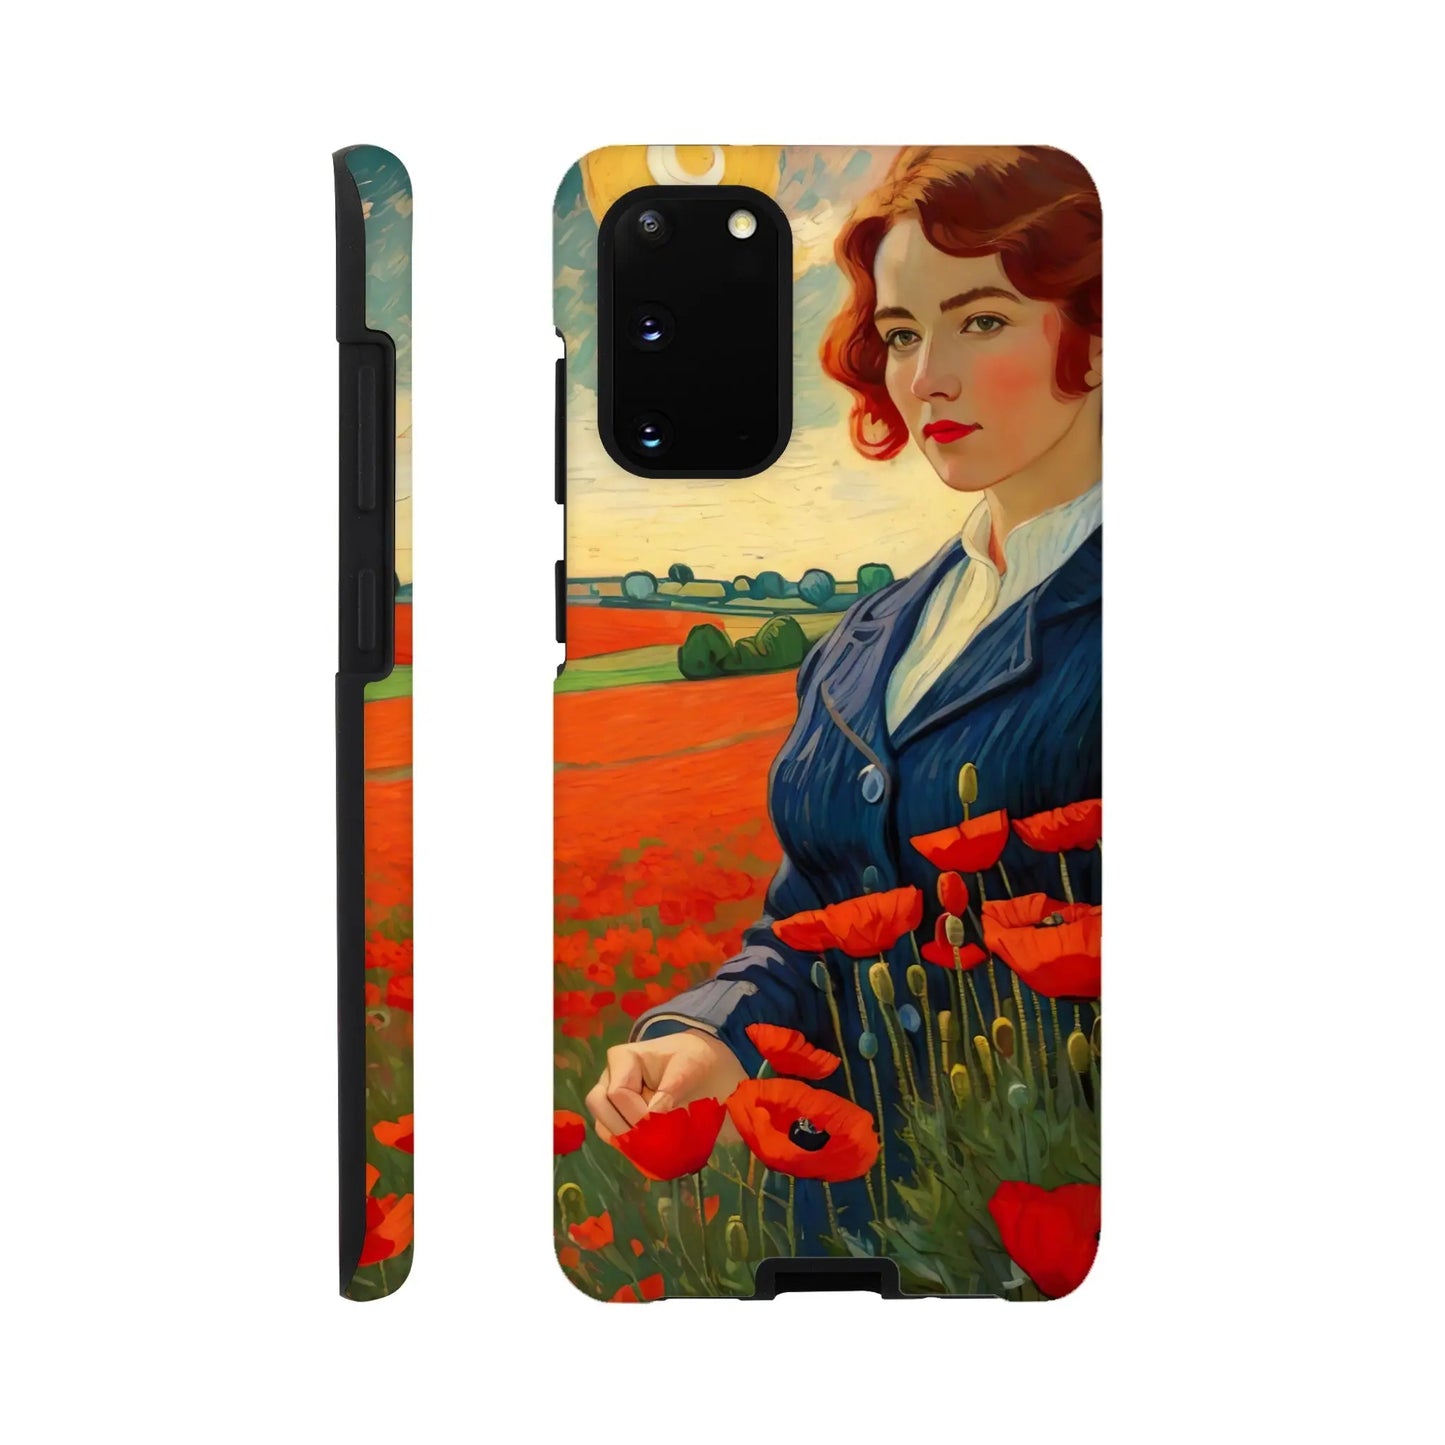 Smartphone-Hülle "Hart" - Blütezeit - Malerischer Stil, KI-Kunst RolConArt, Landschaften, Galaxy-S20